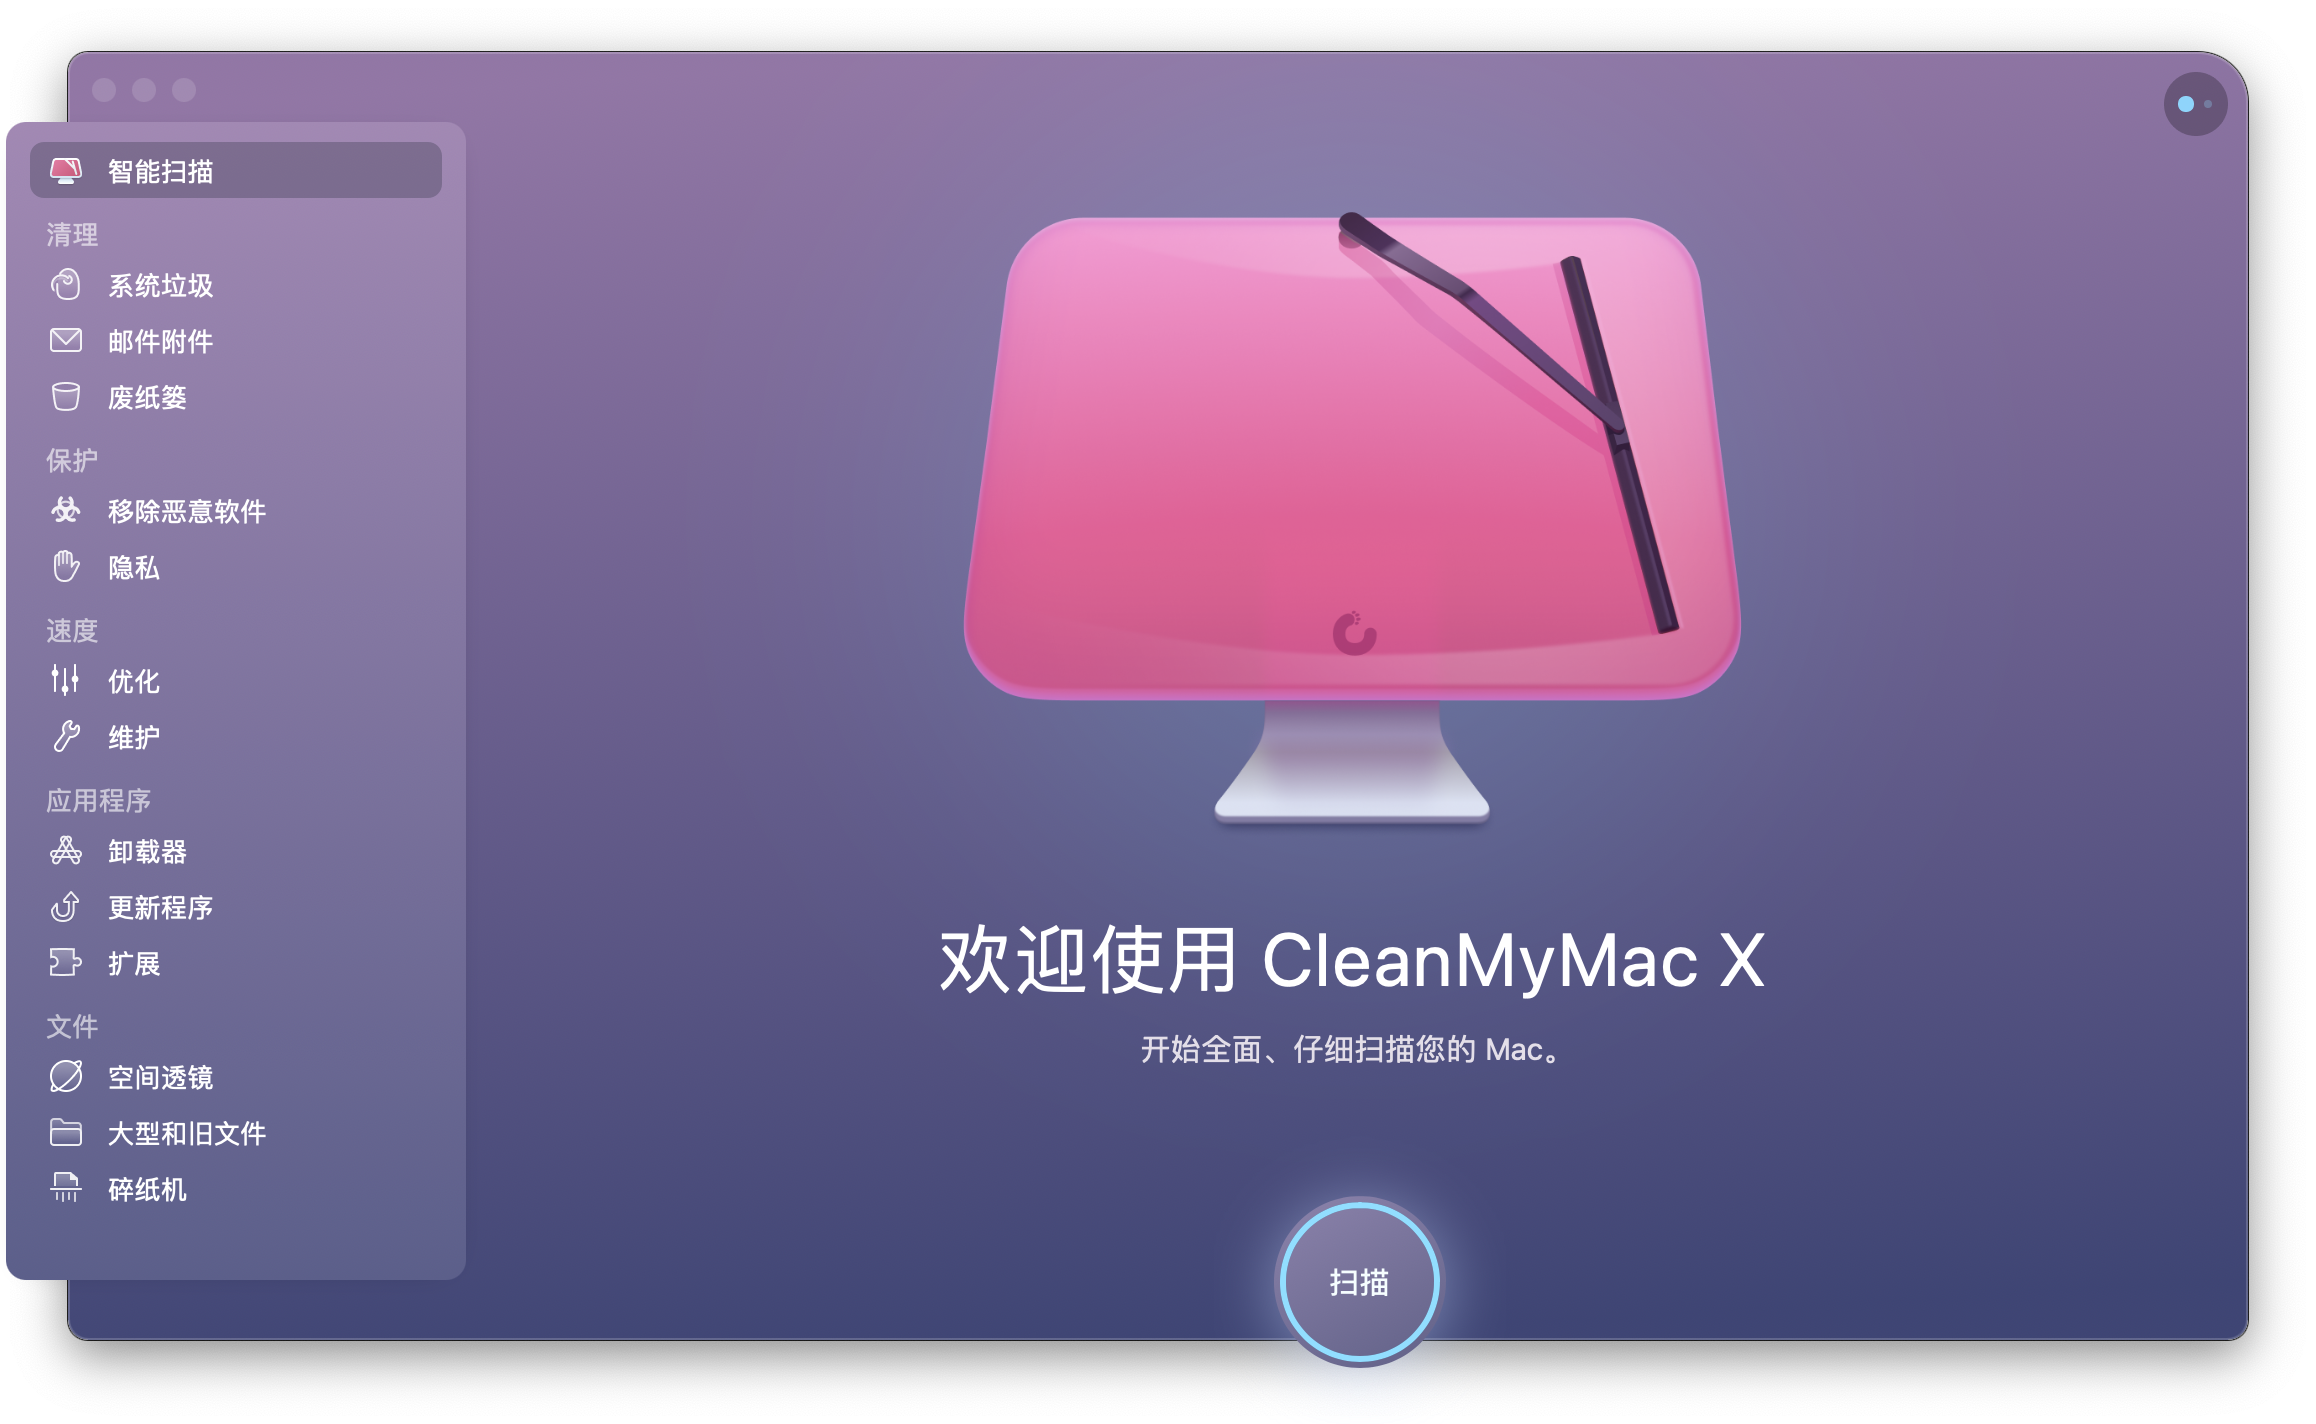 cleanmymac x 4.9